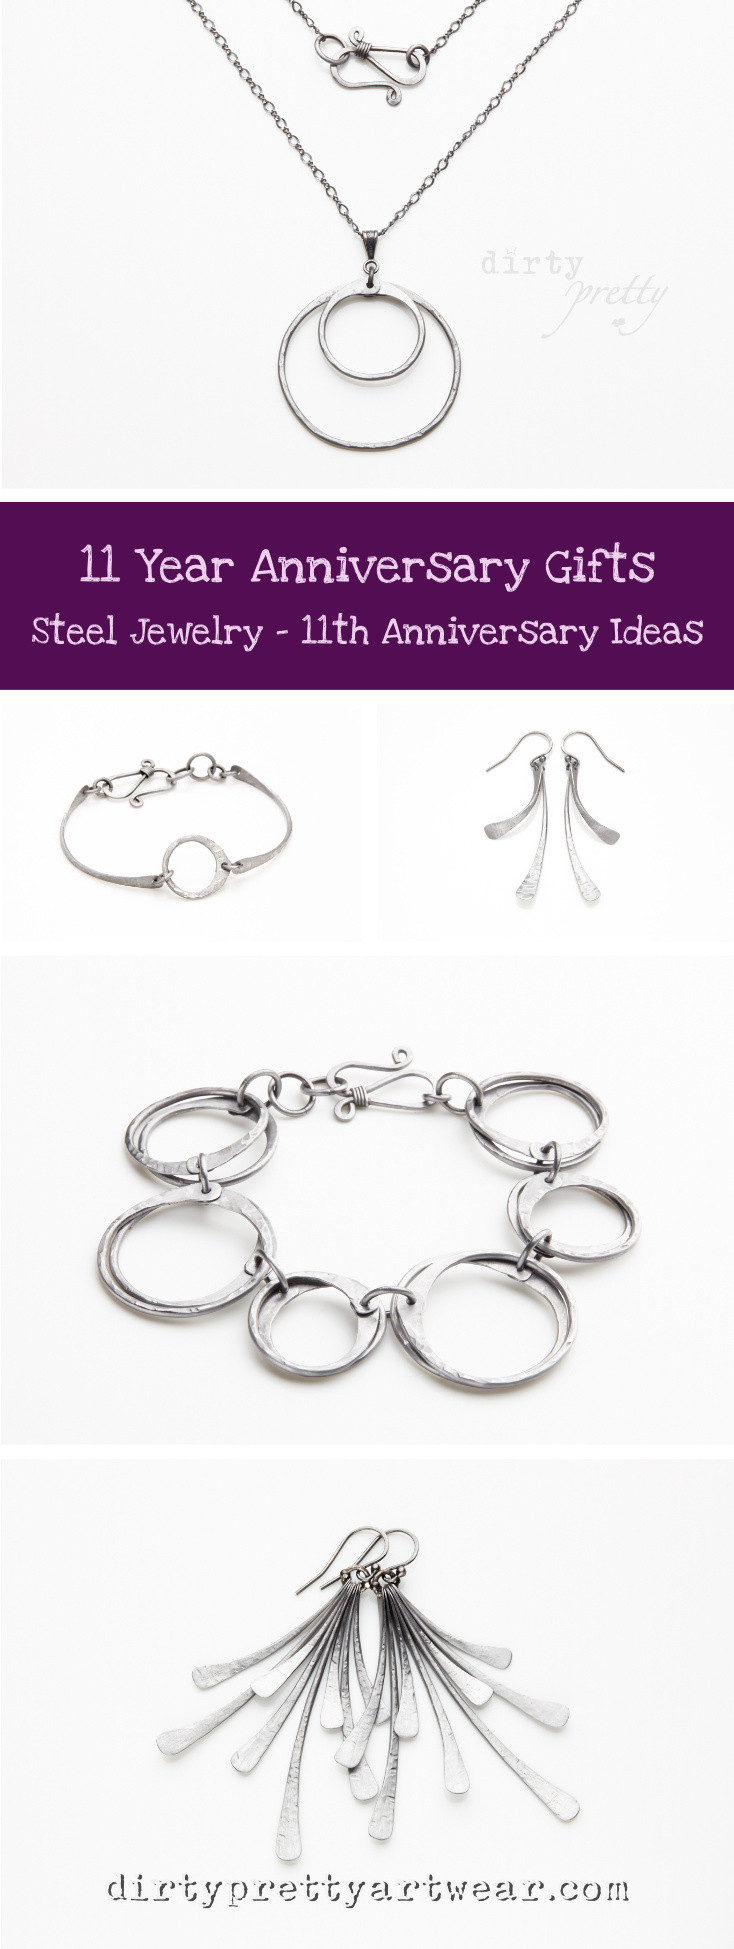 11 Year Anniversary Gift Ideas
 11 Year Anniversary Gift Steel Jewelry 11th